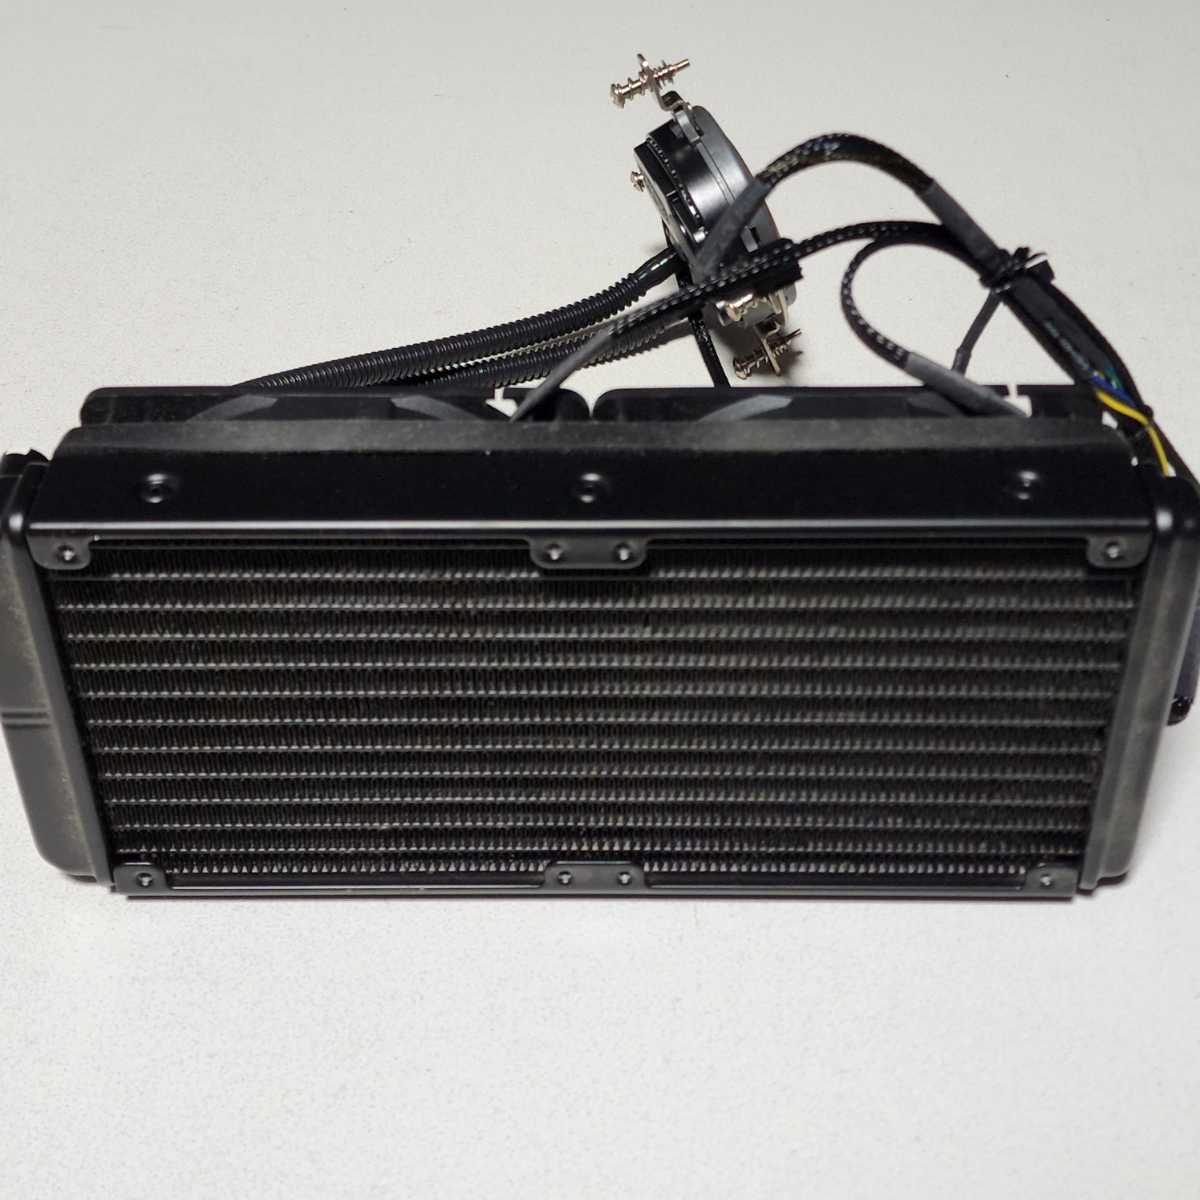 【送料無料】CoolerMaster Seidon 240M(RL-S24M-24PK-J1) 240mm 簡易水冷型CPUクーラー LGA115X・LGA1200等対応 PCパーツ_画像3